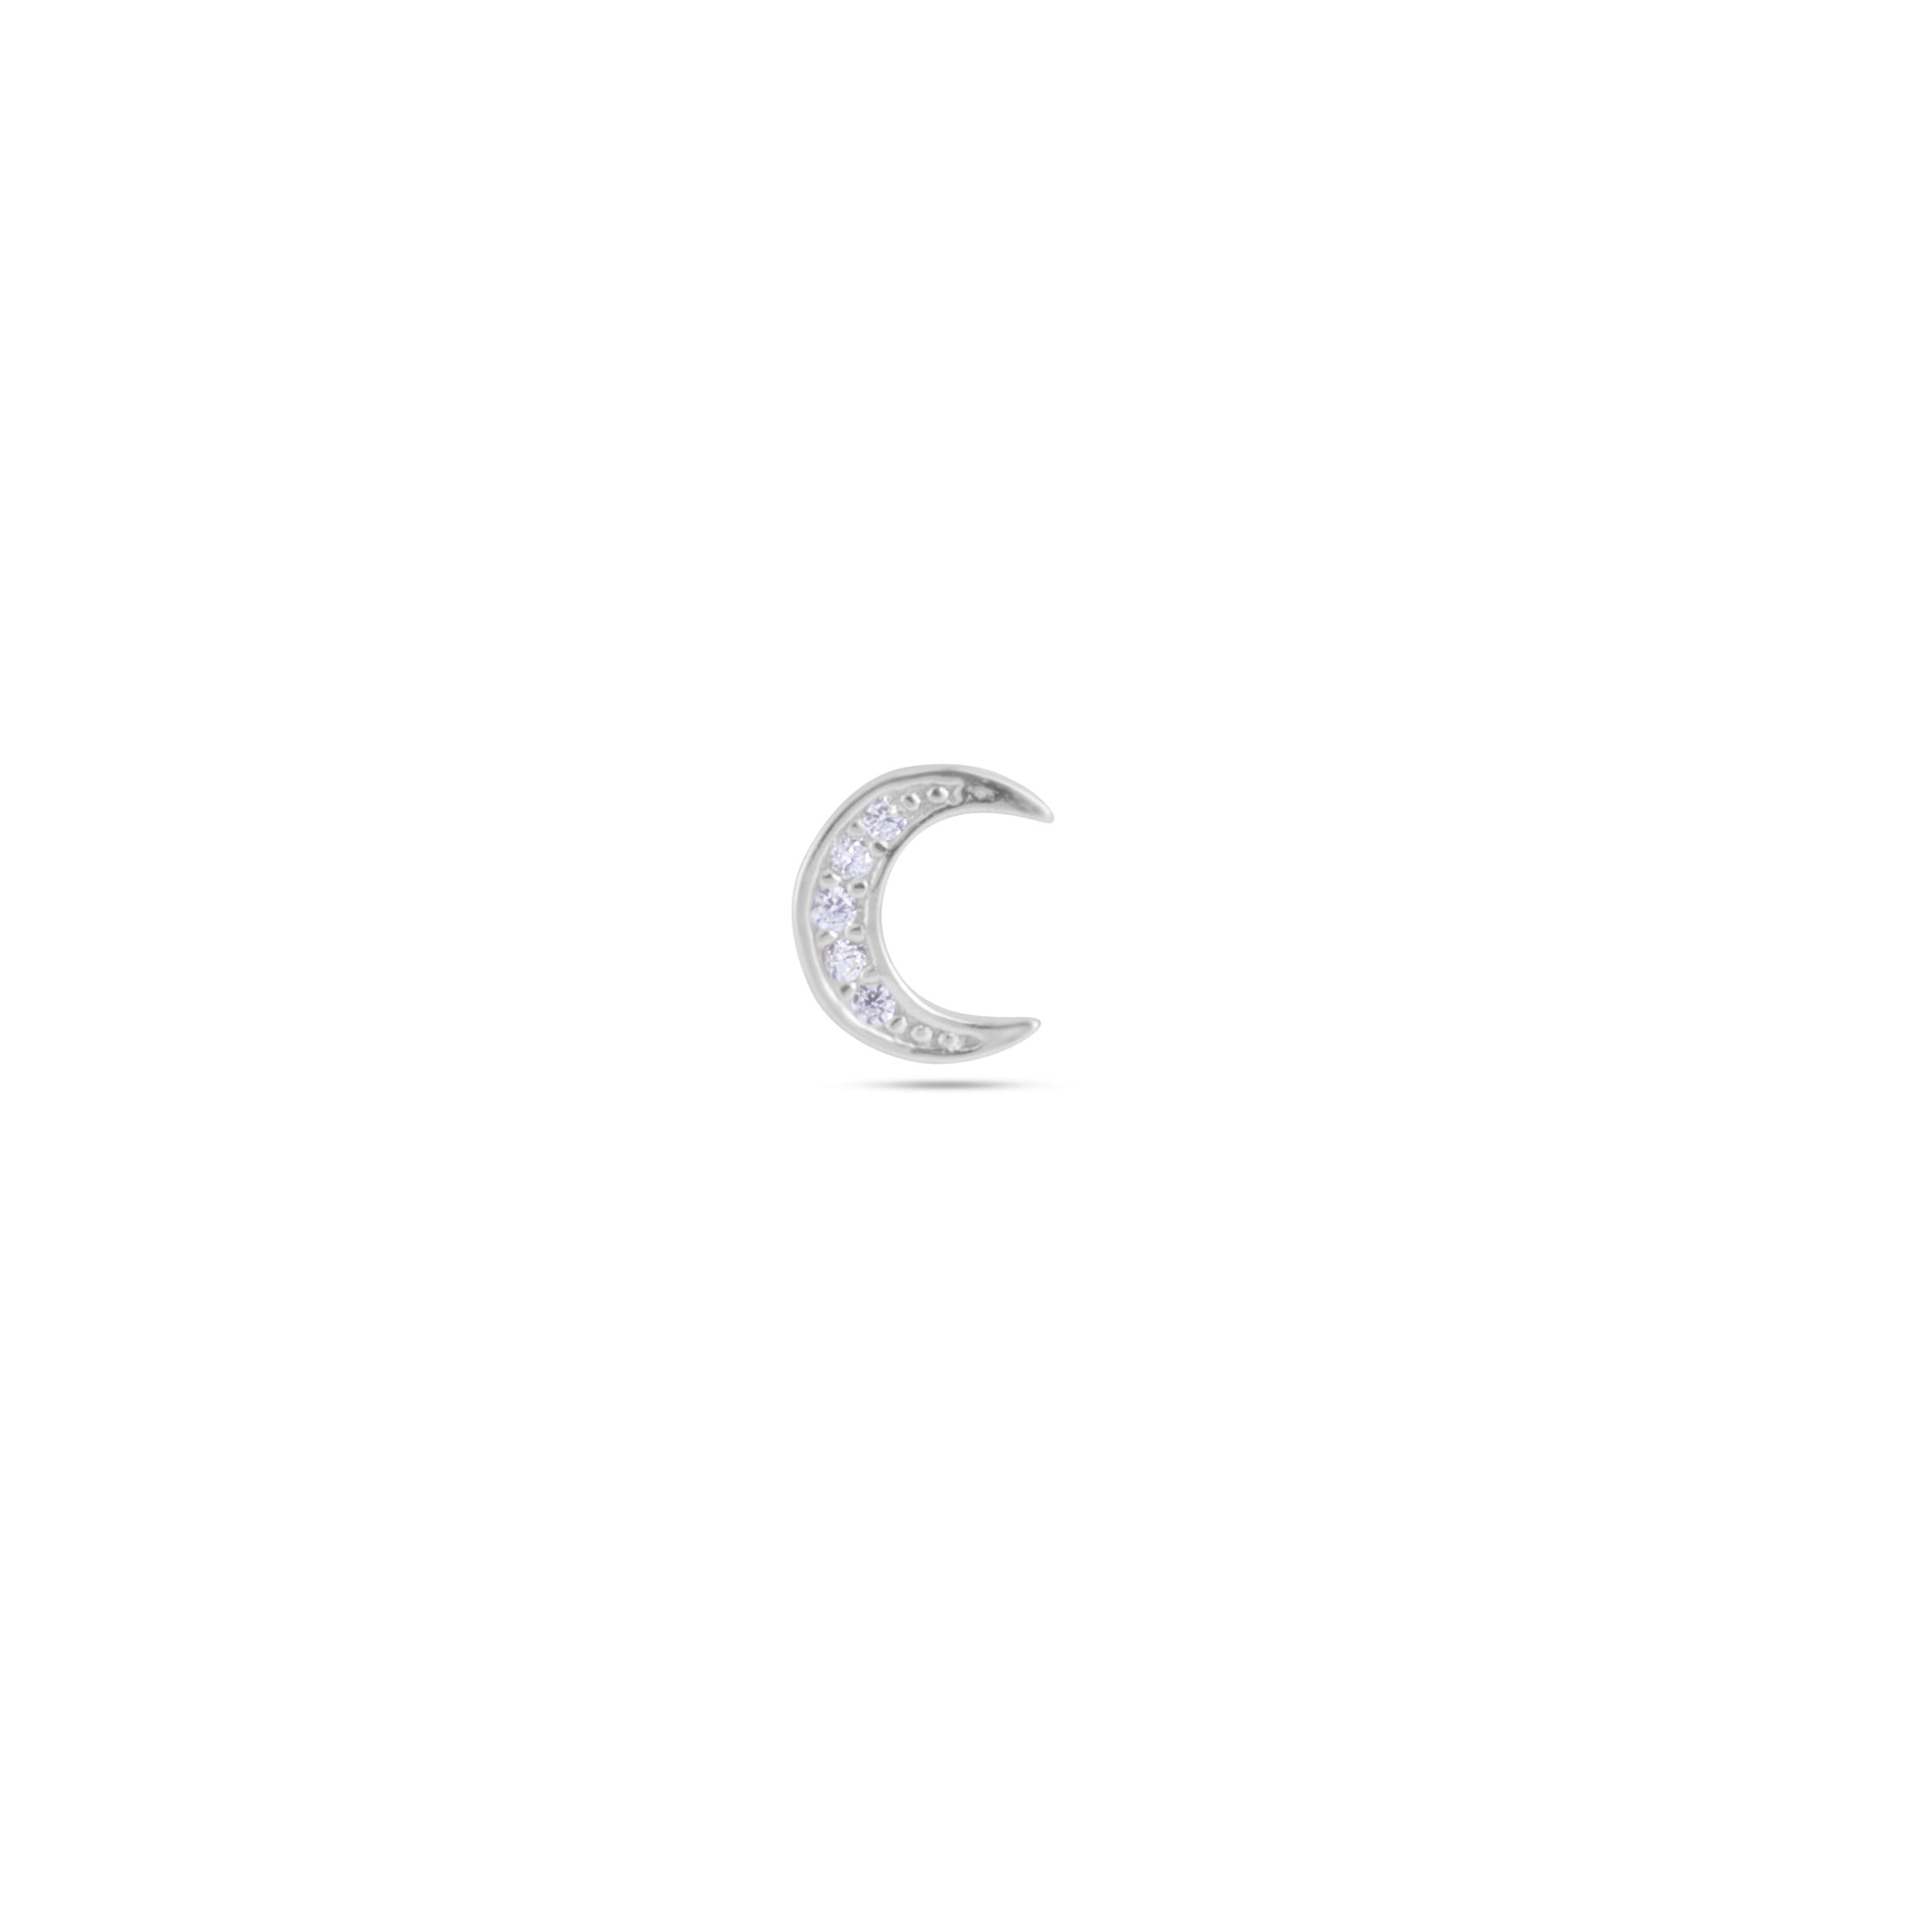 Zirconia crescent moon stud earring - Pair